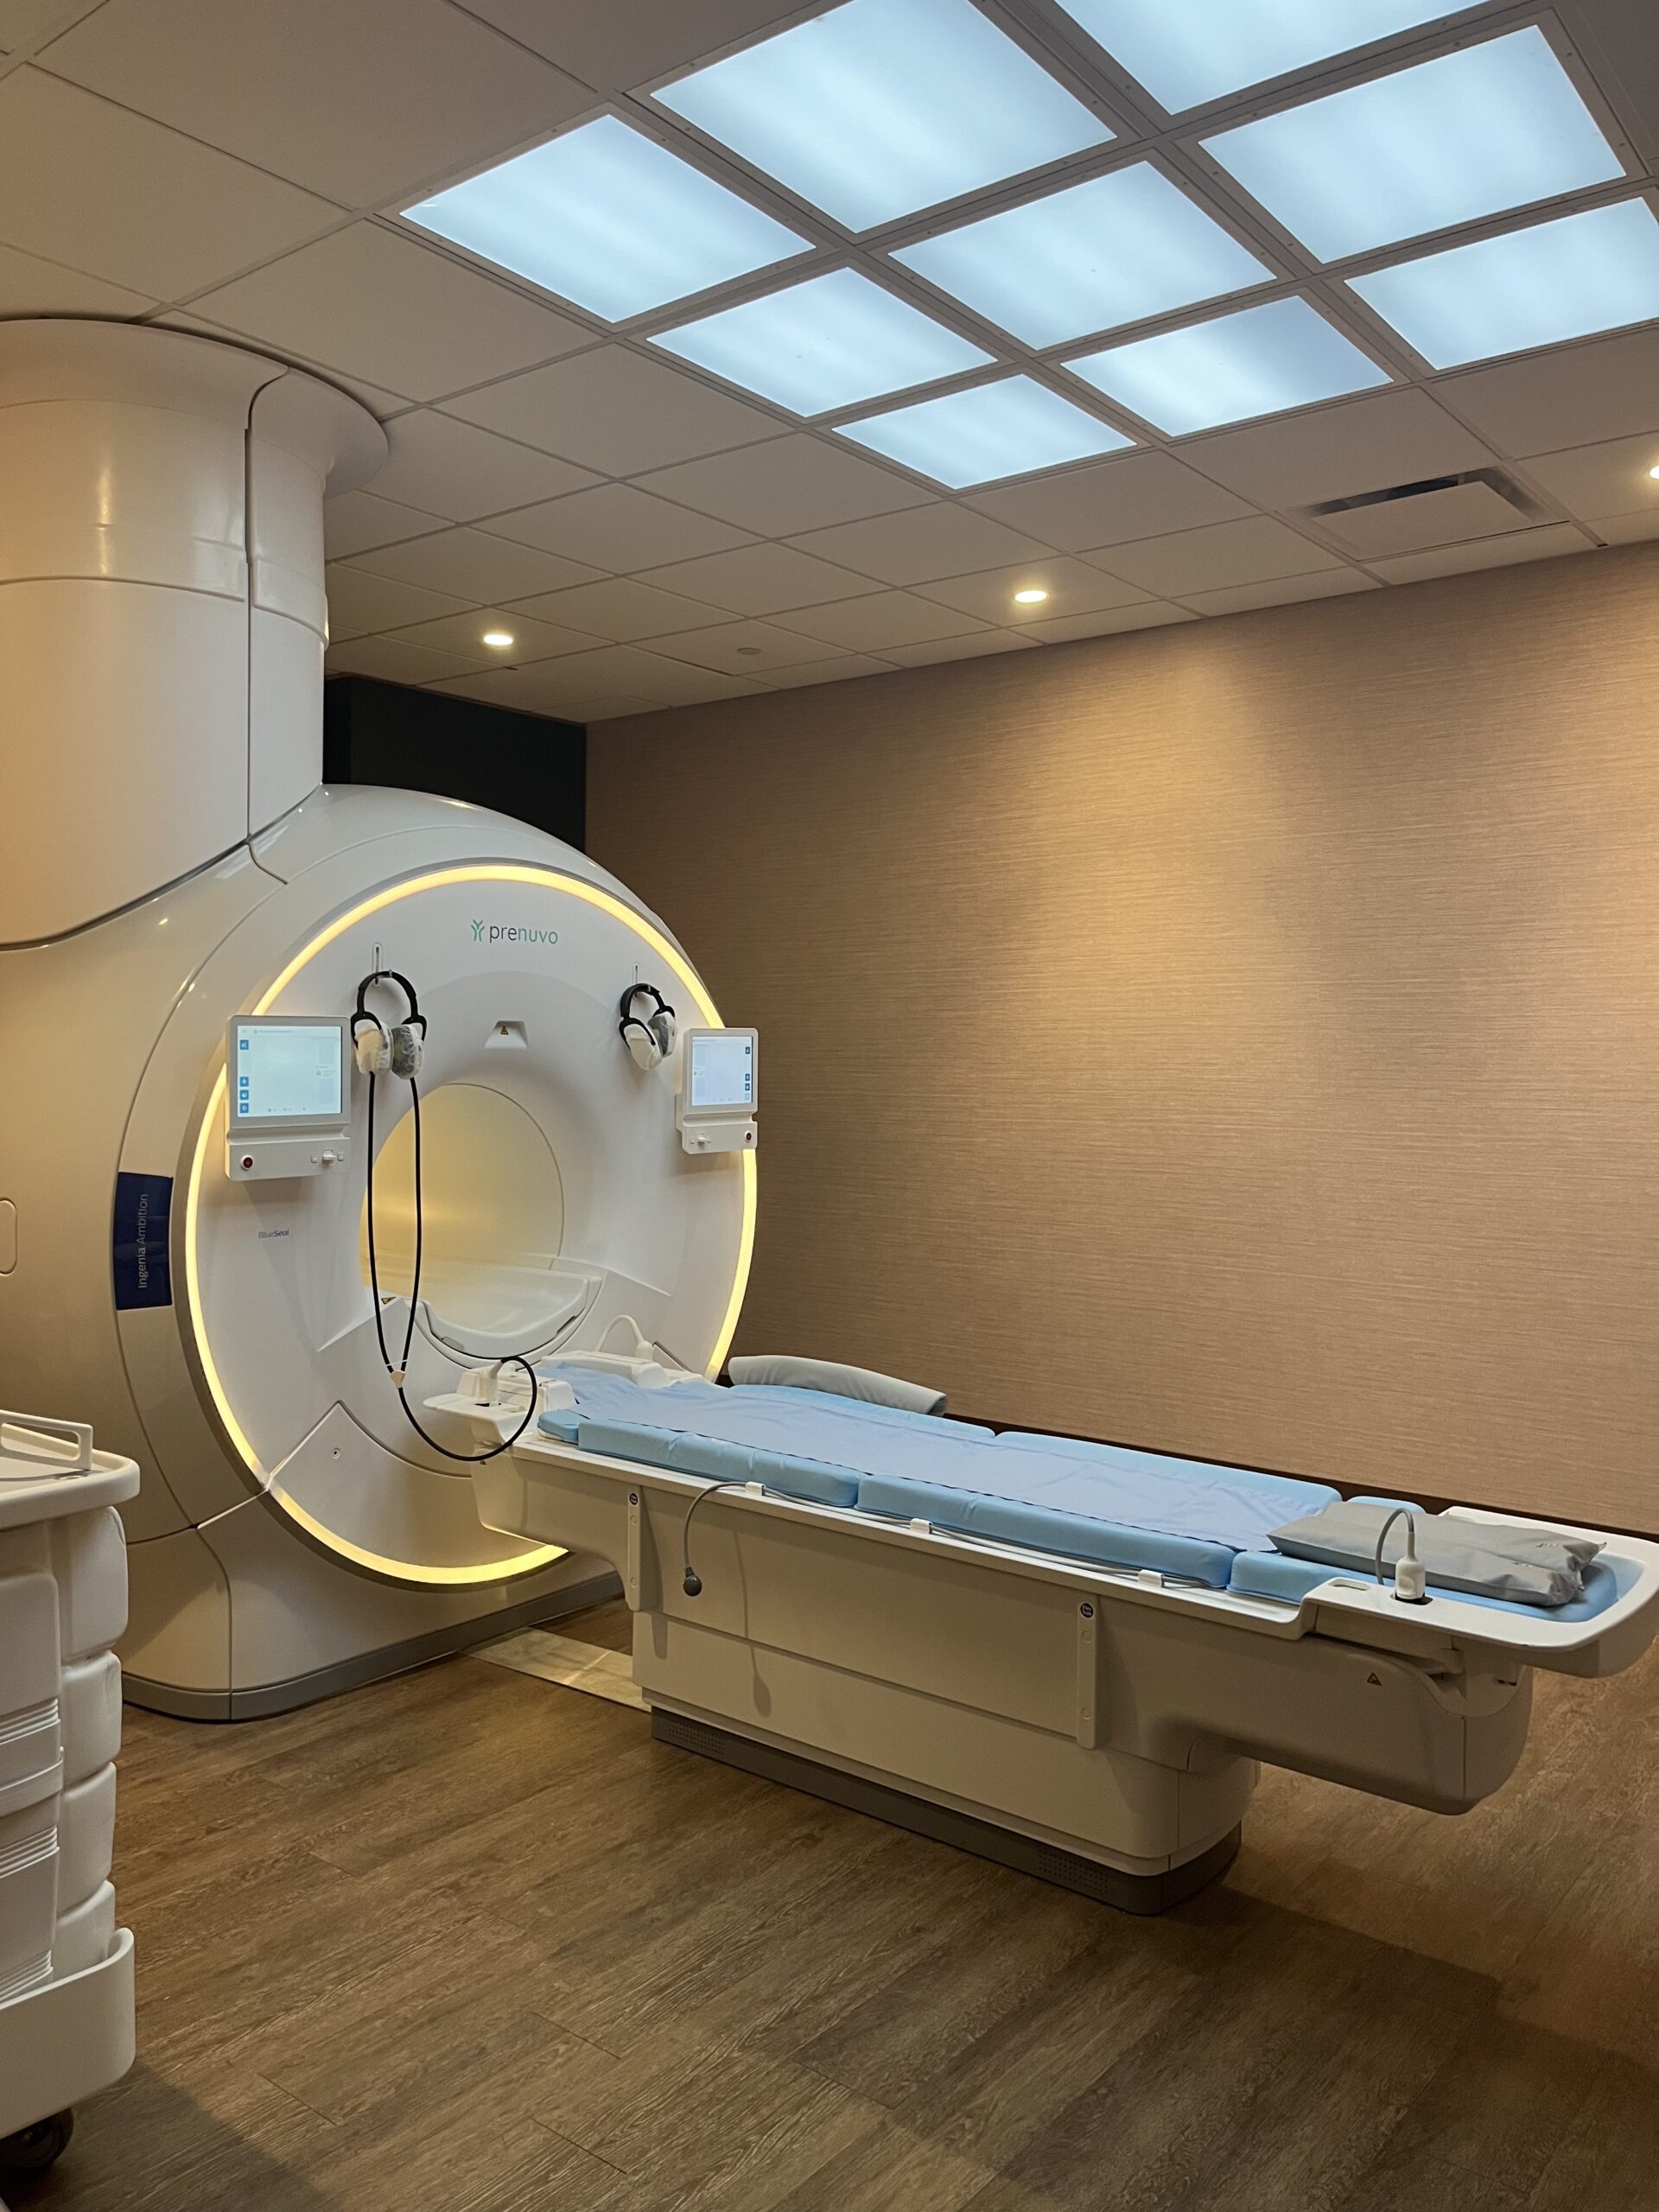 Prenuvo-MRI